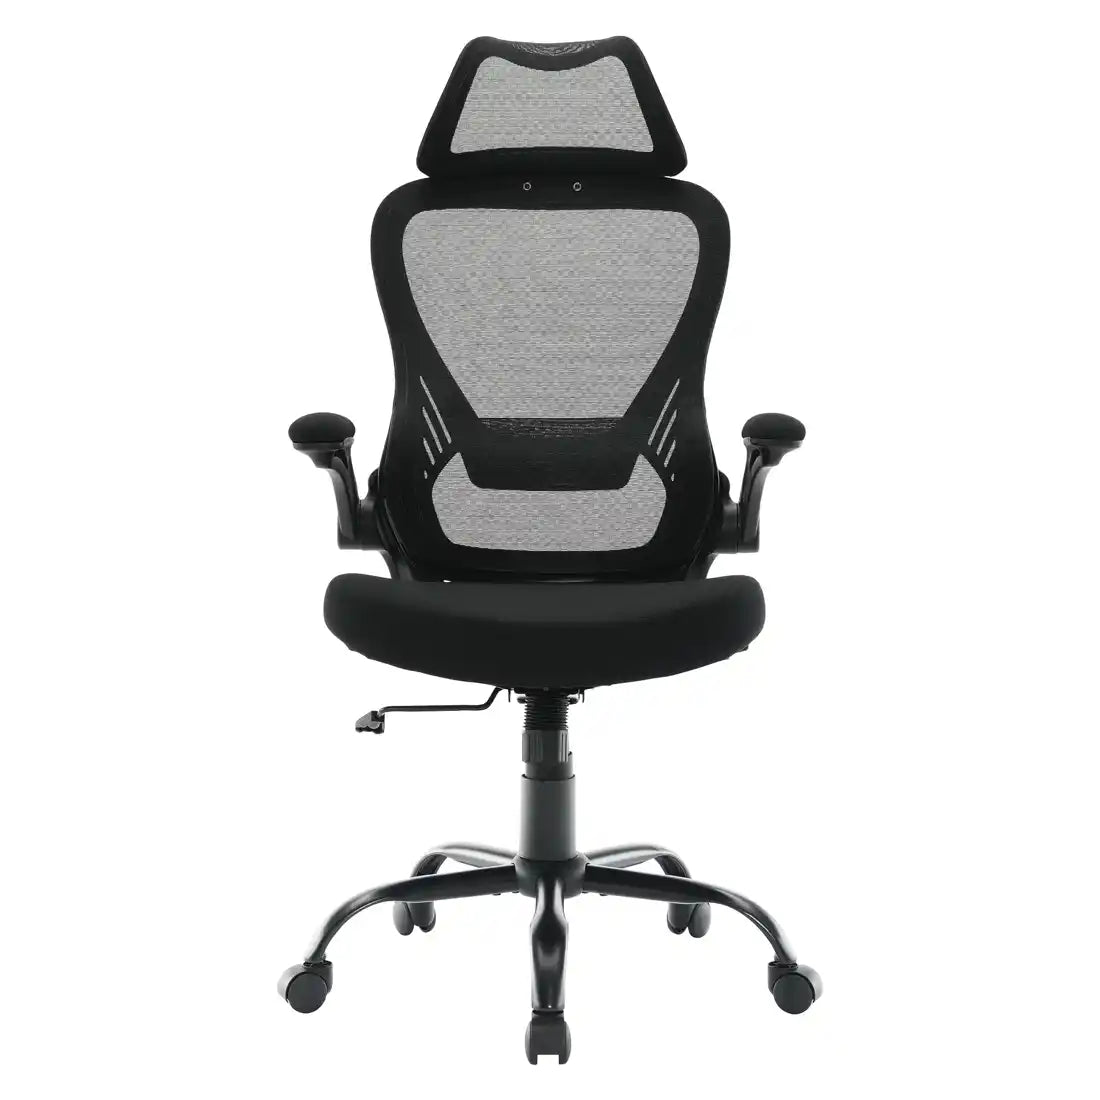 WorkSmart Mesh Back Manager's Chair with Headrest - EM60946HR-3 - Functional Office Furniture - EM60946HR-3